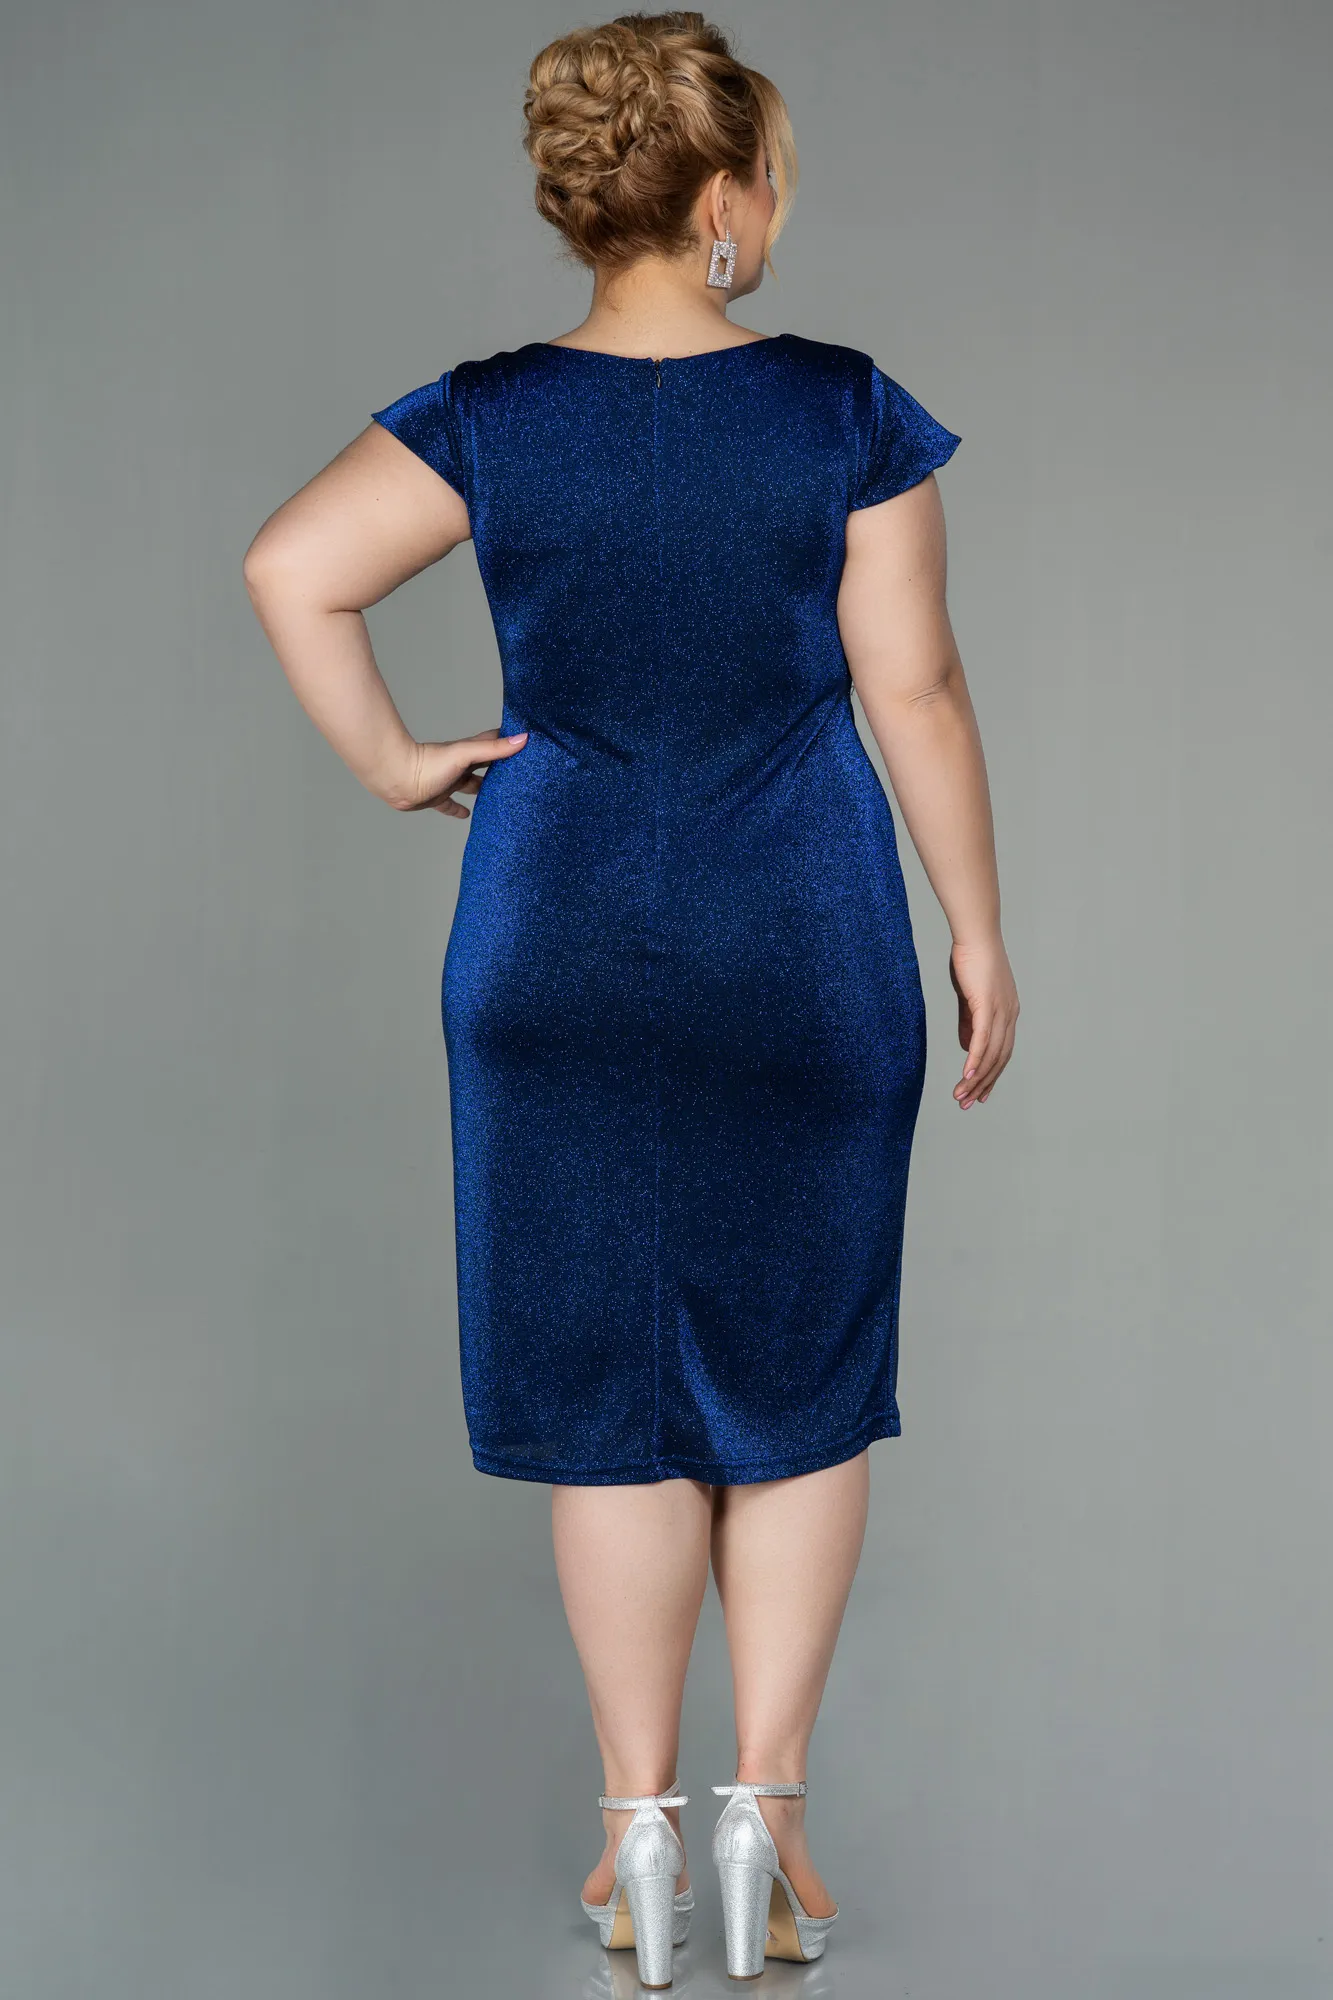 Sax Blue-Short Plus Size Evening Dress ABK1583